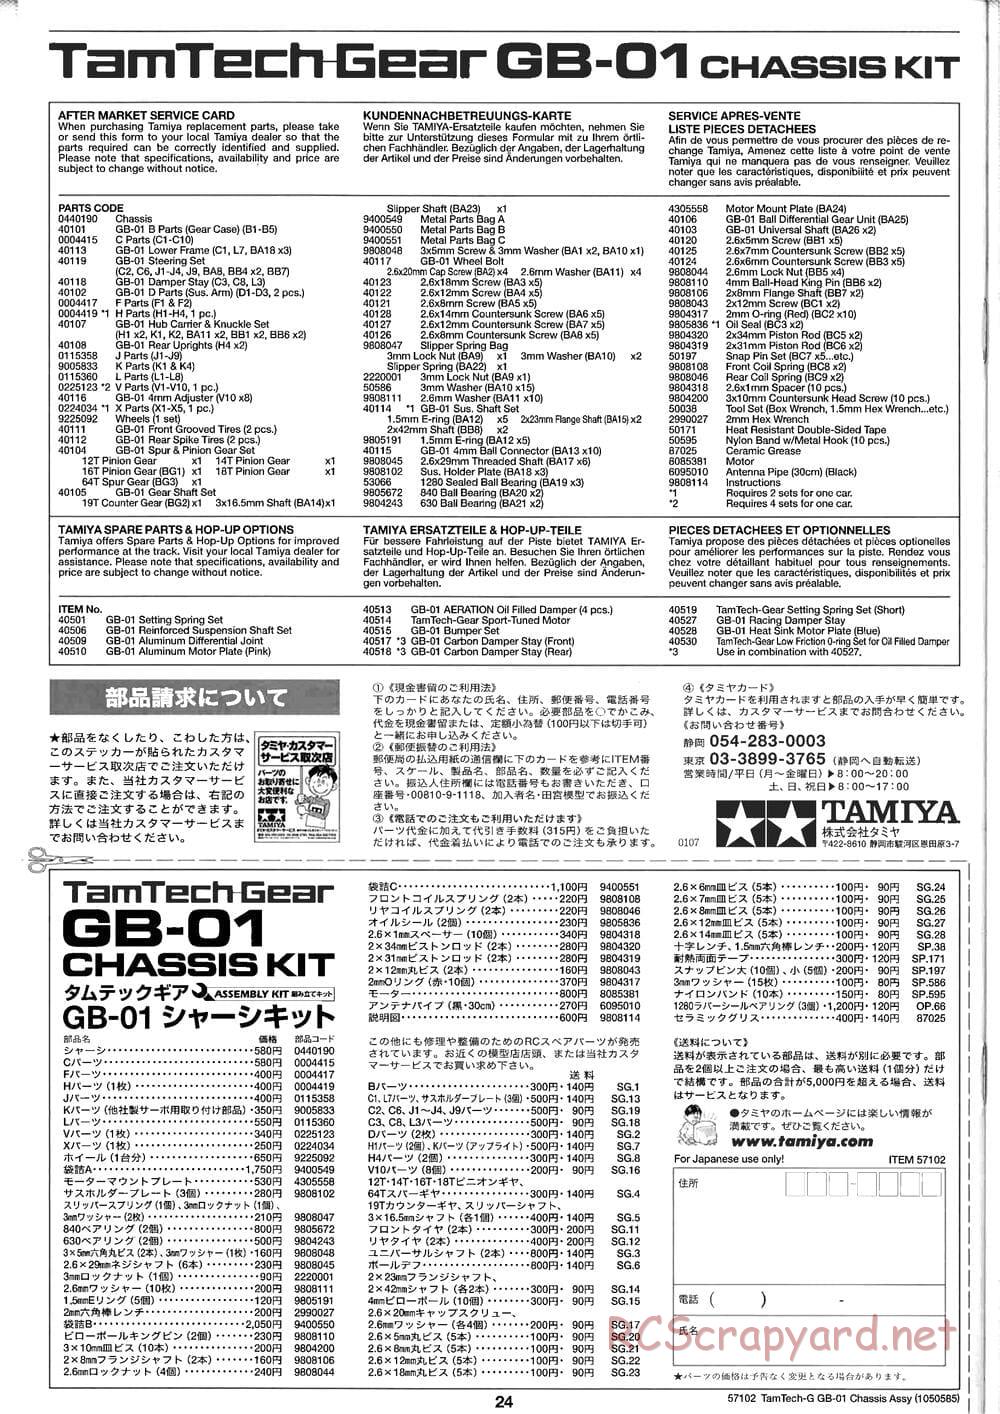 Tamiya - GB-01 Chassis - Manual - Page 24